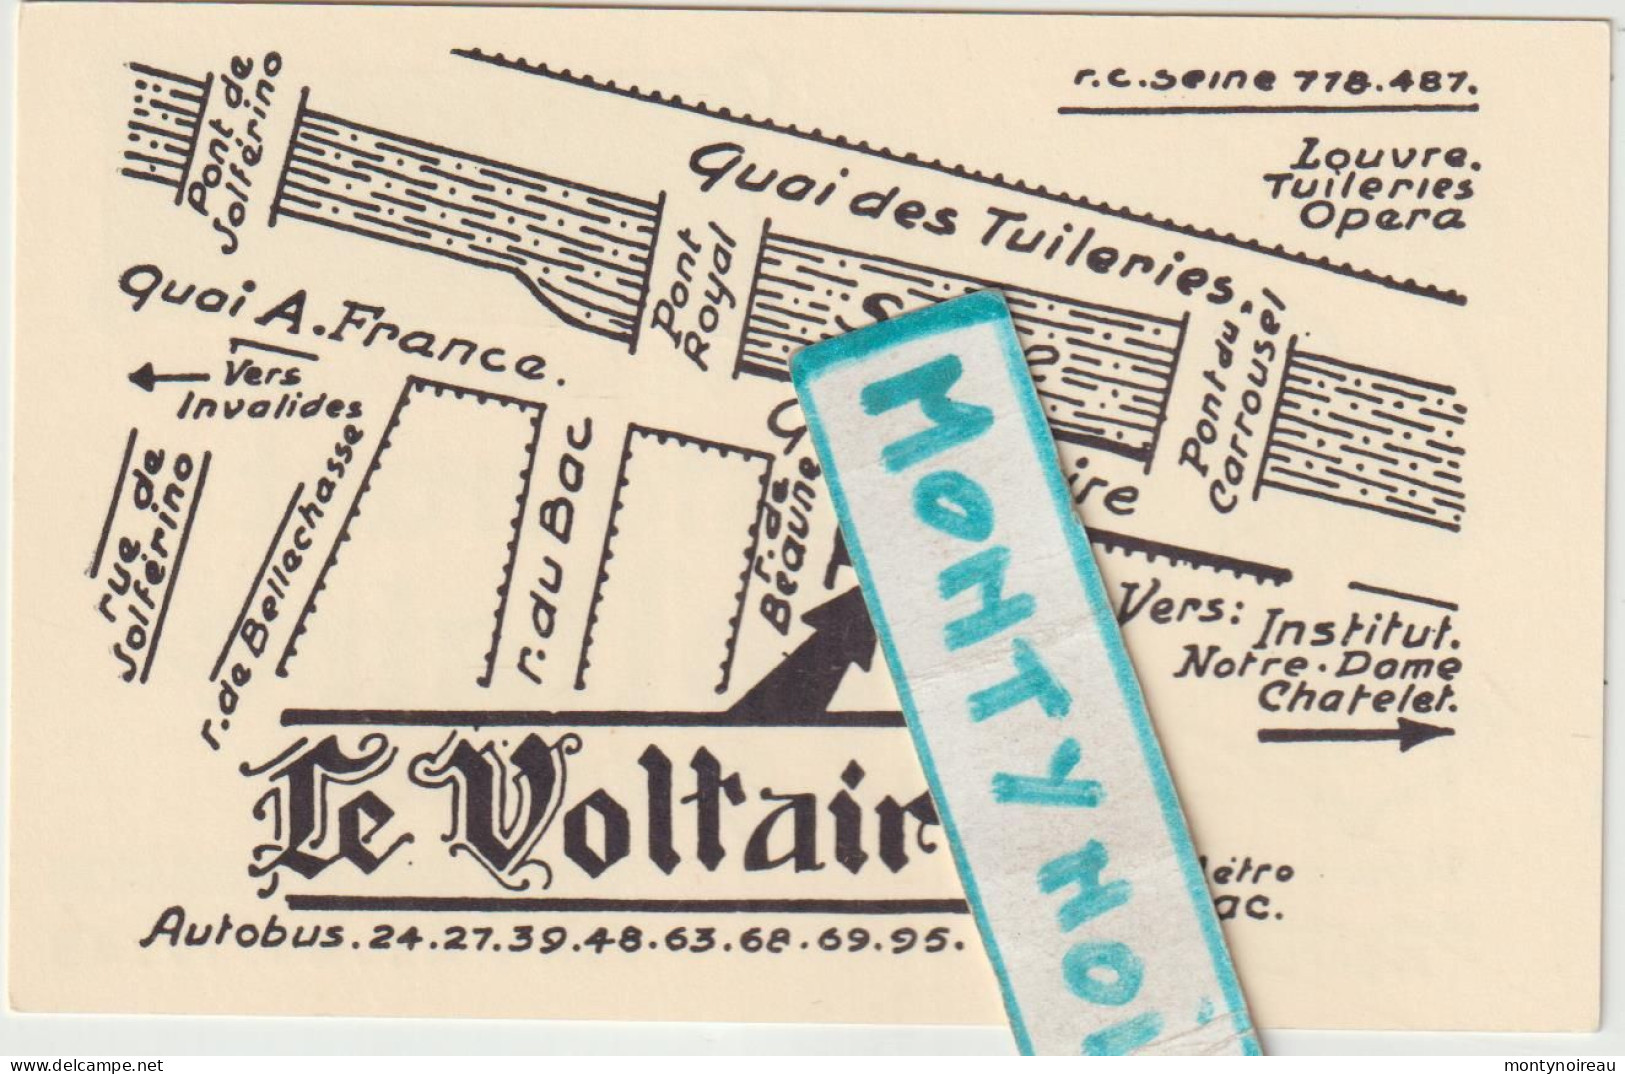 VP : Carte De Visite : Restaurant Le  Voltaire , Paris 7  Em - Cartes De Visite